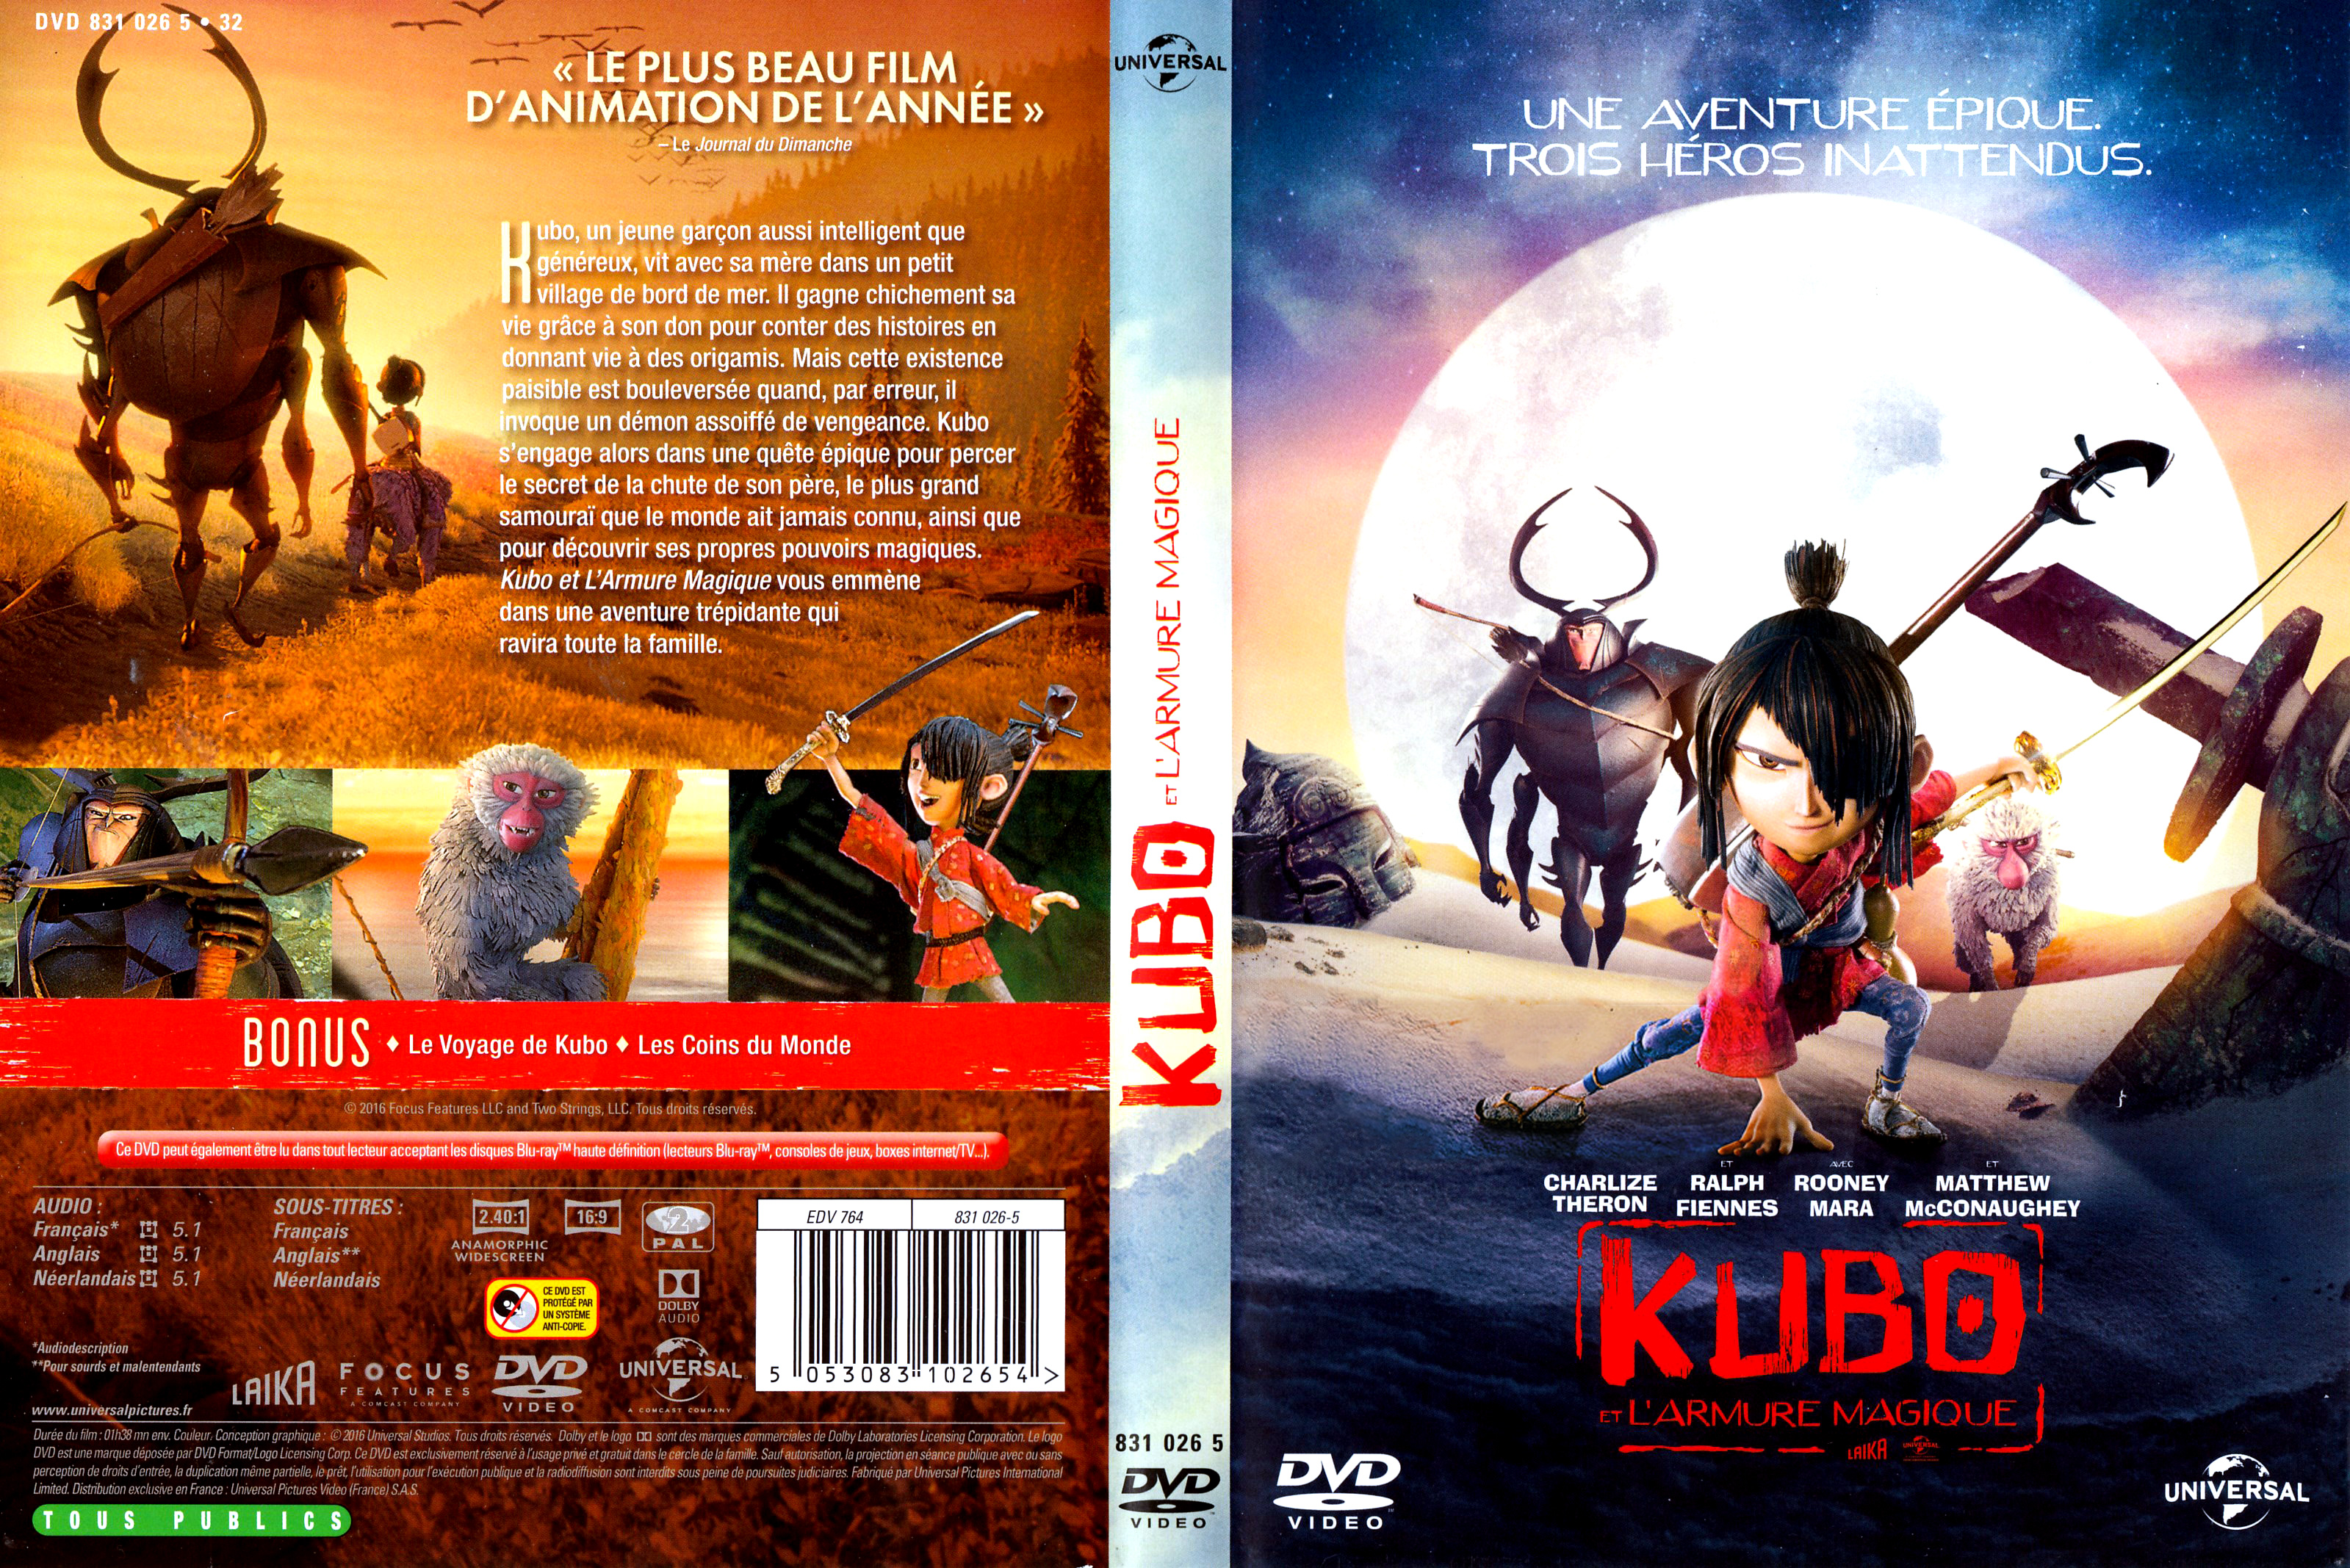 Jaquette DVD Kubo et l